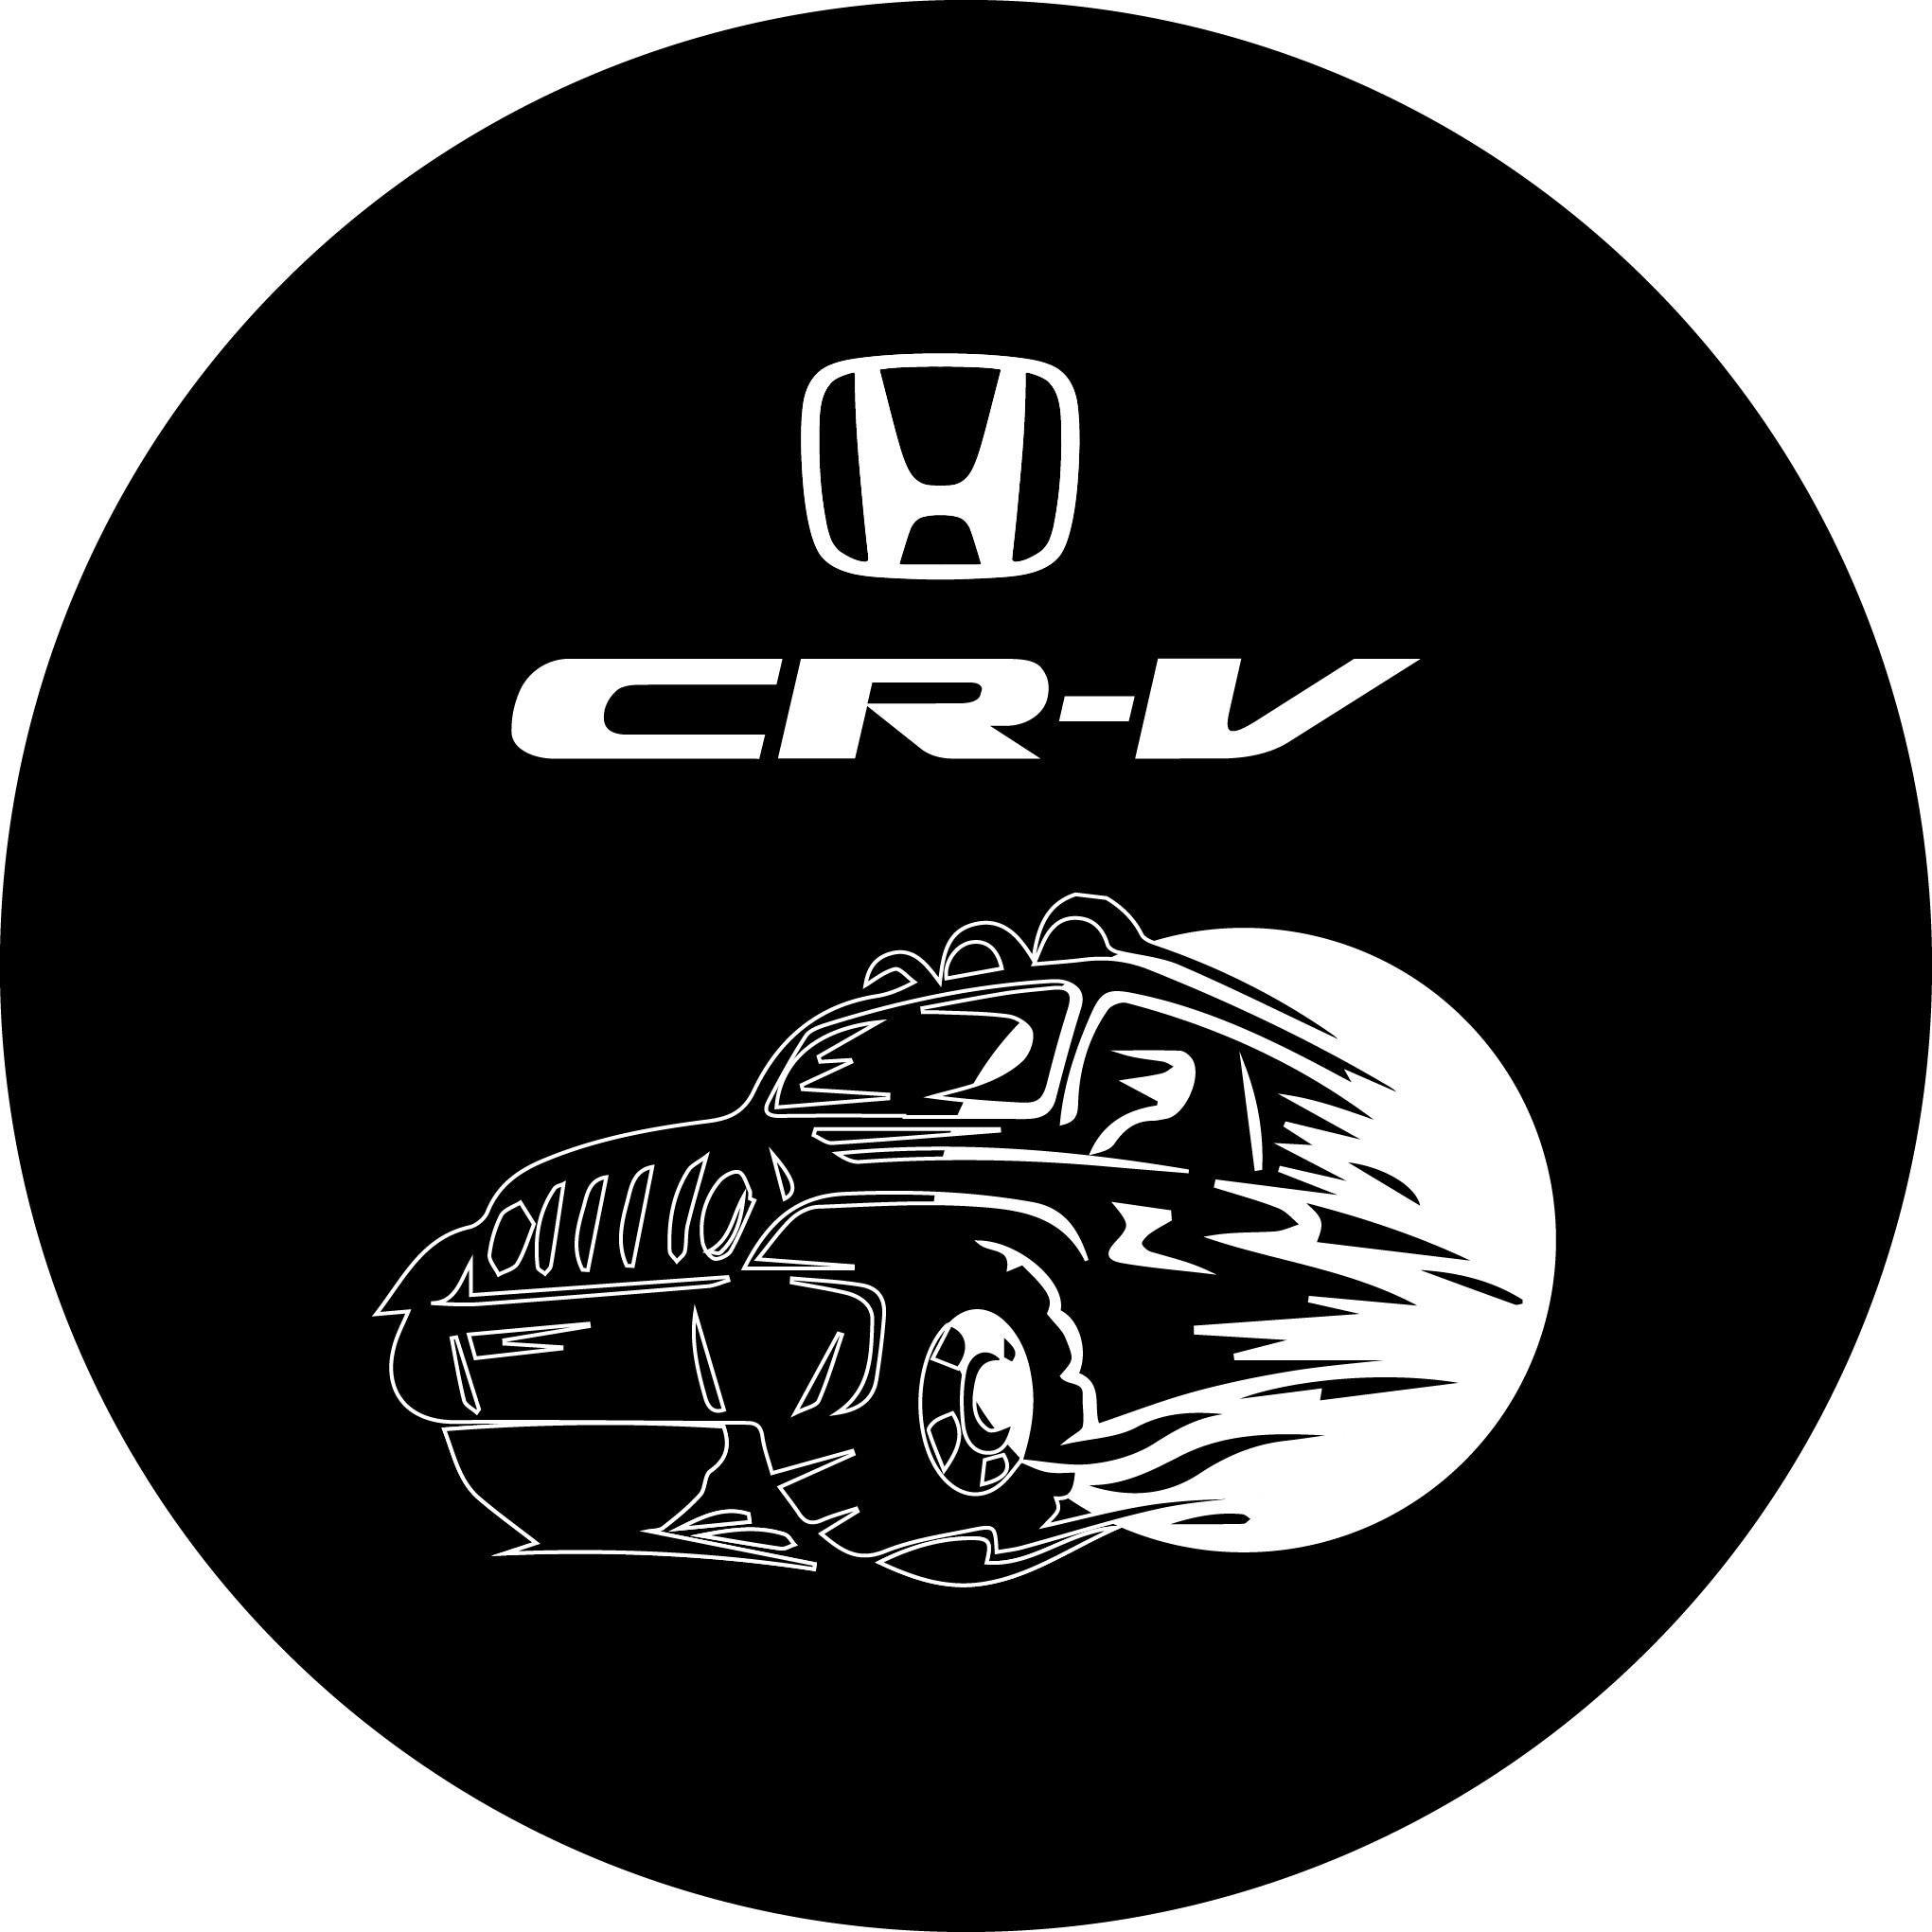 Honda CR-V Logolu Stepne Kılıfı